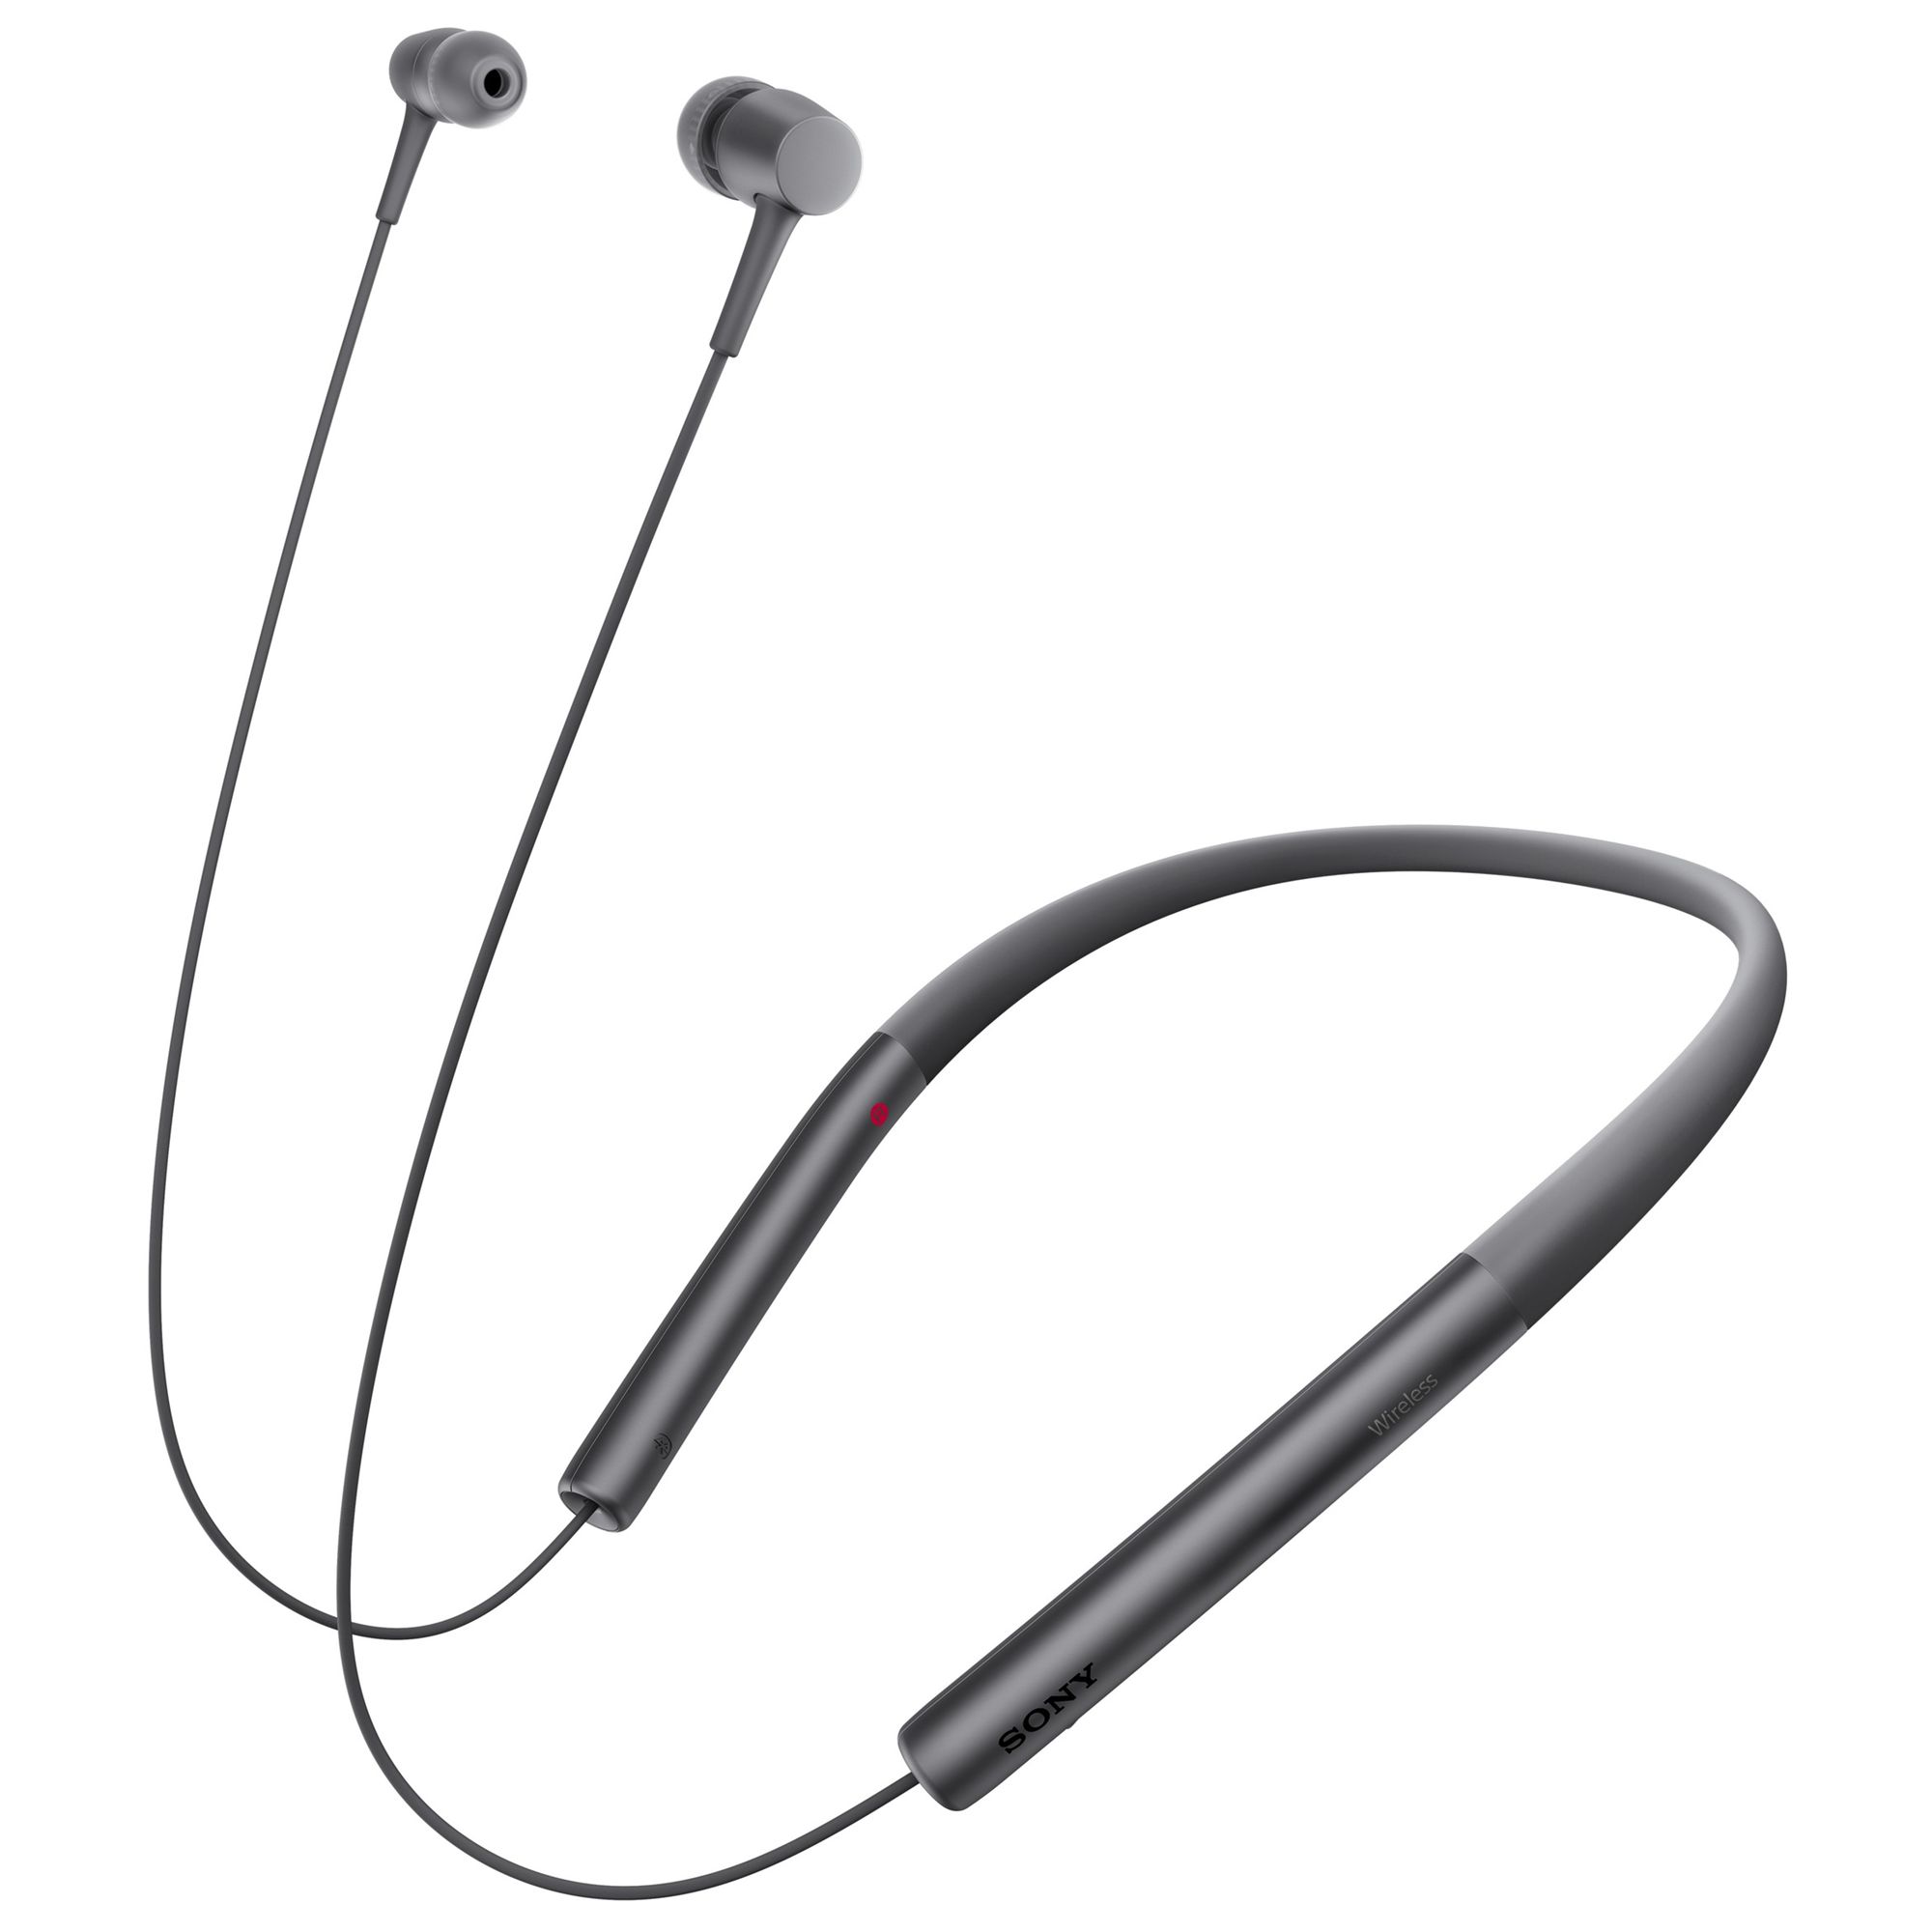 Buy Sony MDR-EX750BT h.ear in Wireless High Resolution In-Ear